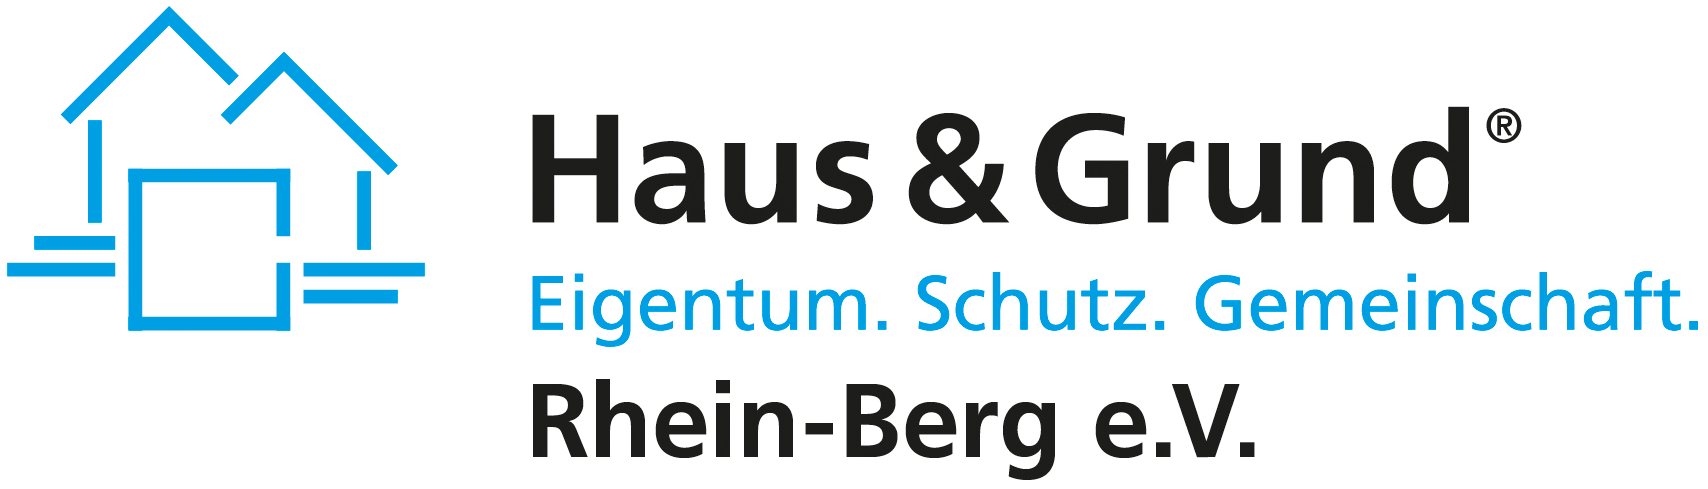 Online Shop Haus und Grund Rhein-Berg e.V.